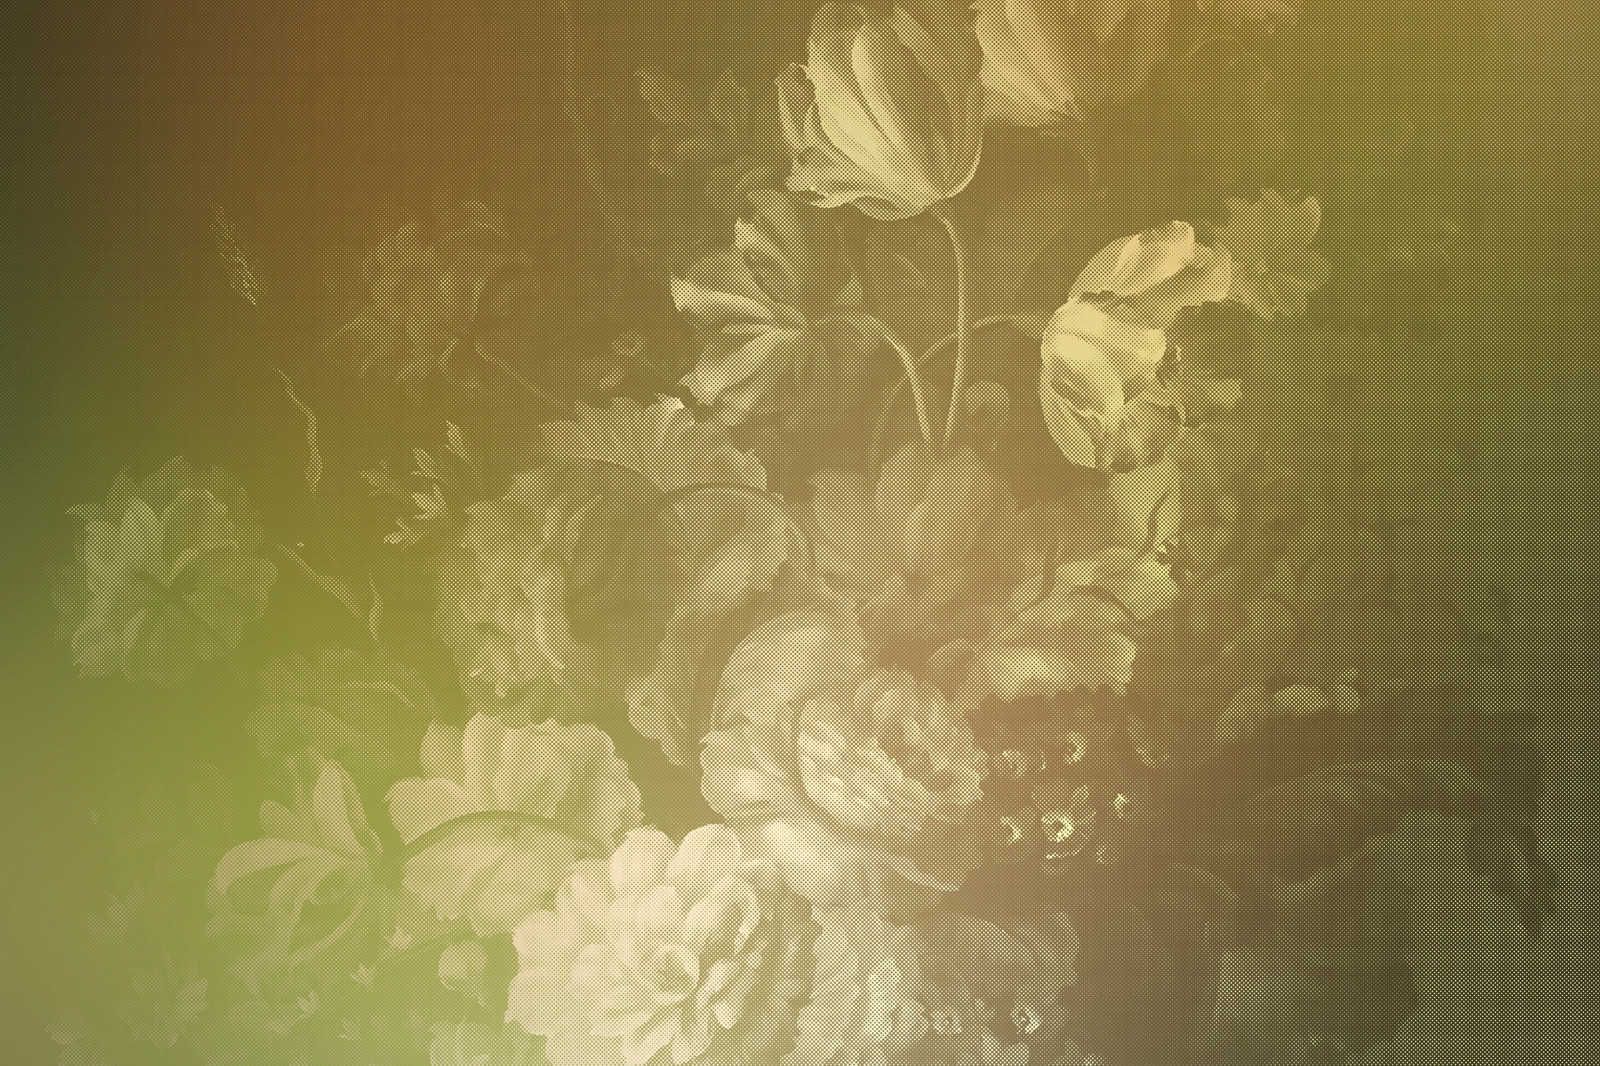             Pastello olandese 2 - Quadro su tela con bouquet di rose in stile olandese - 1,20 m x 0,80 m
        